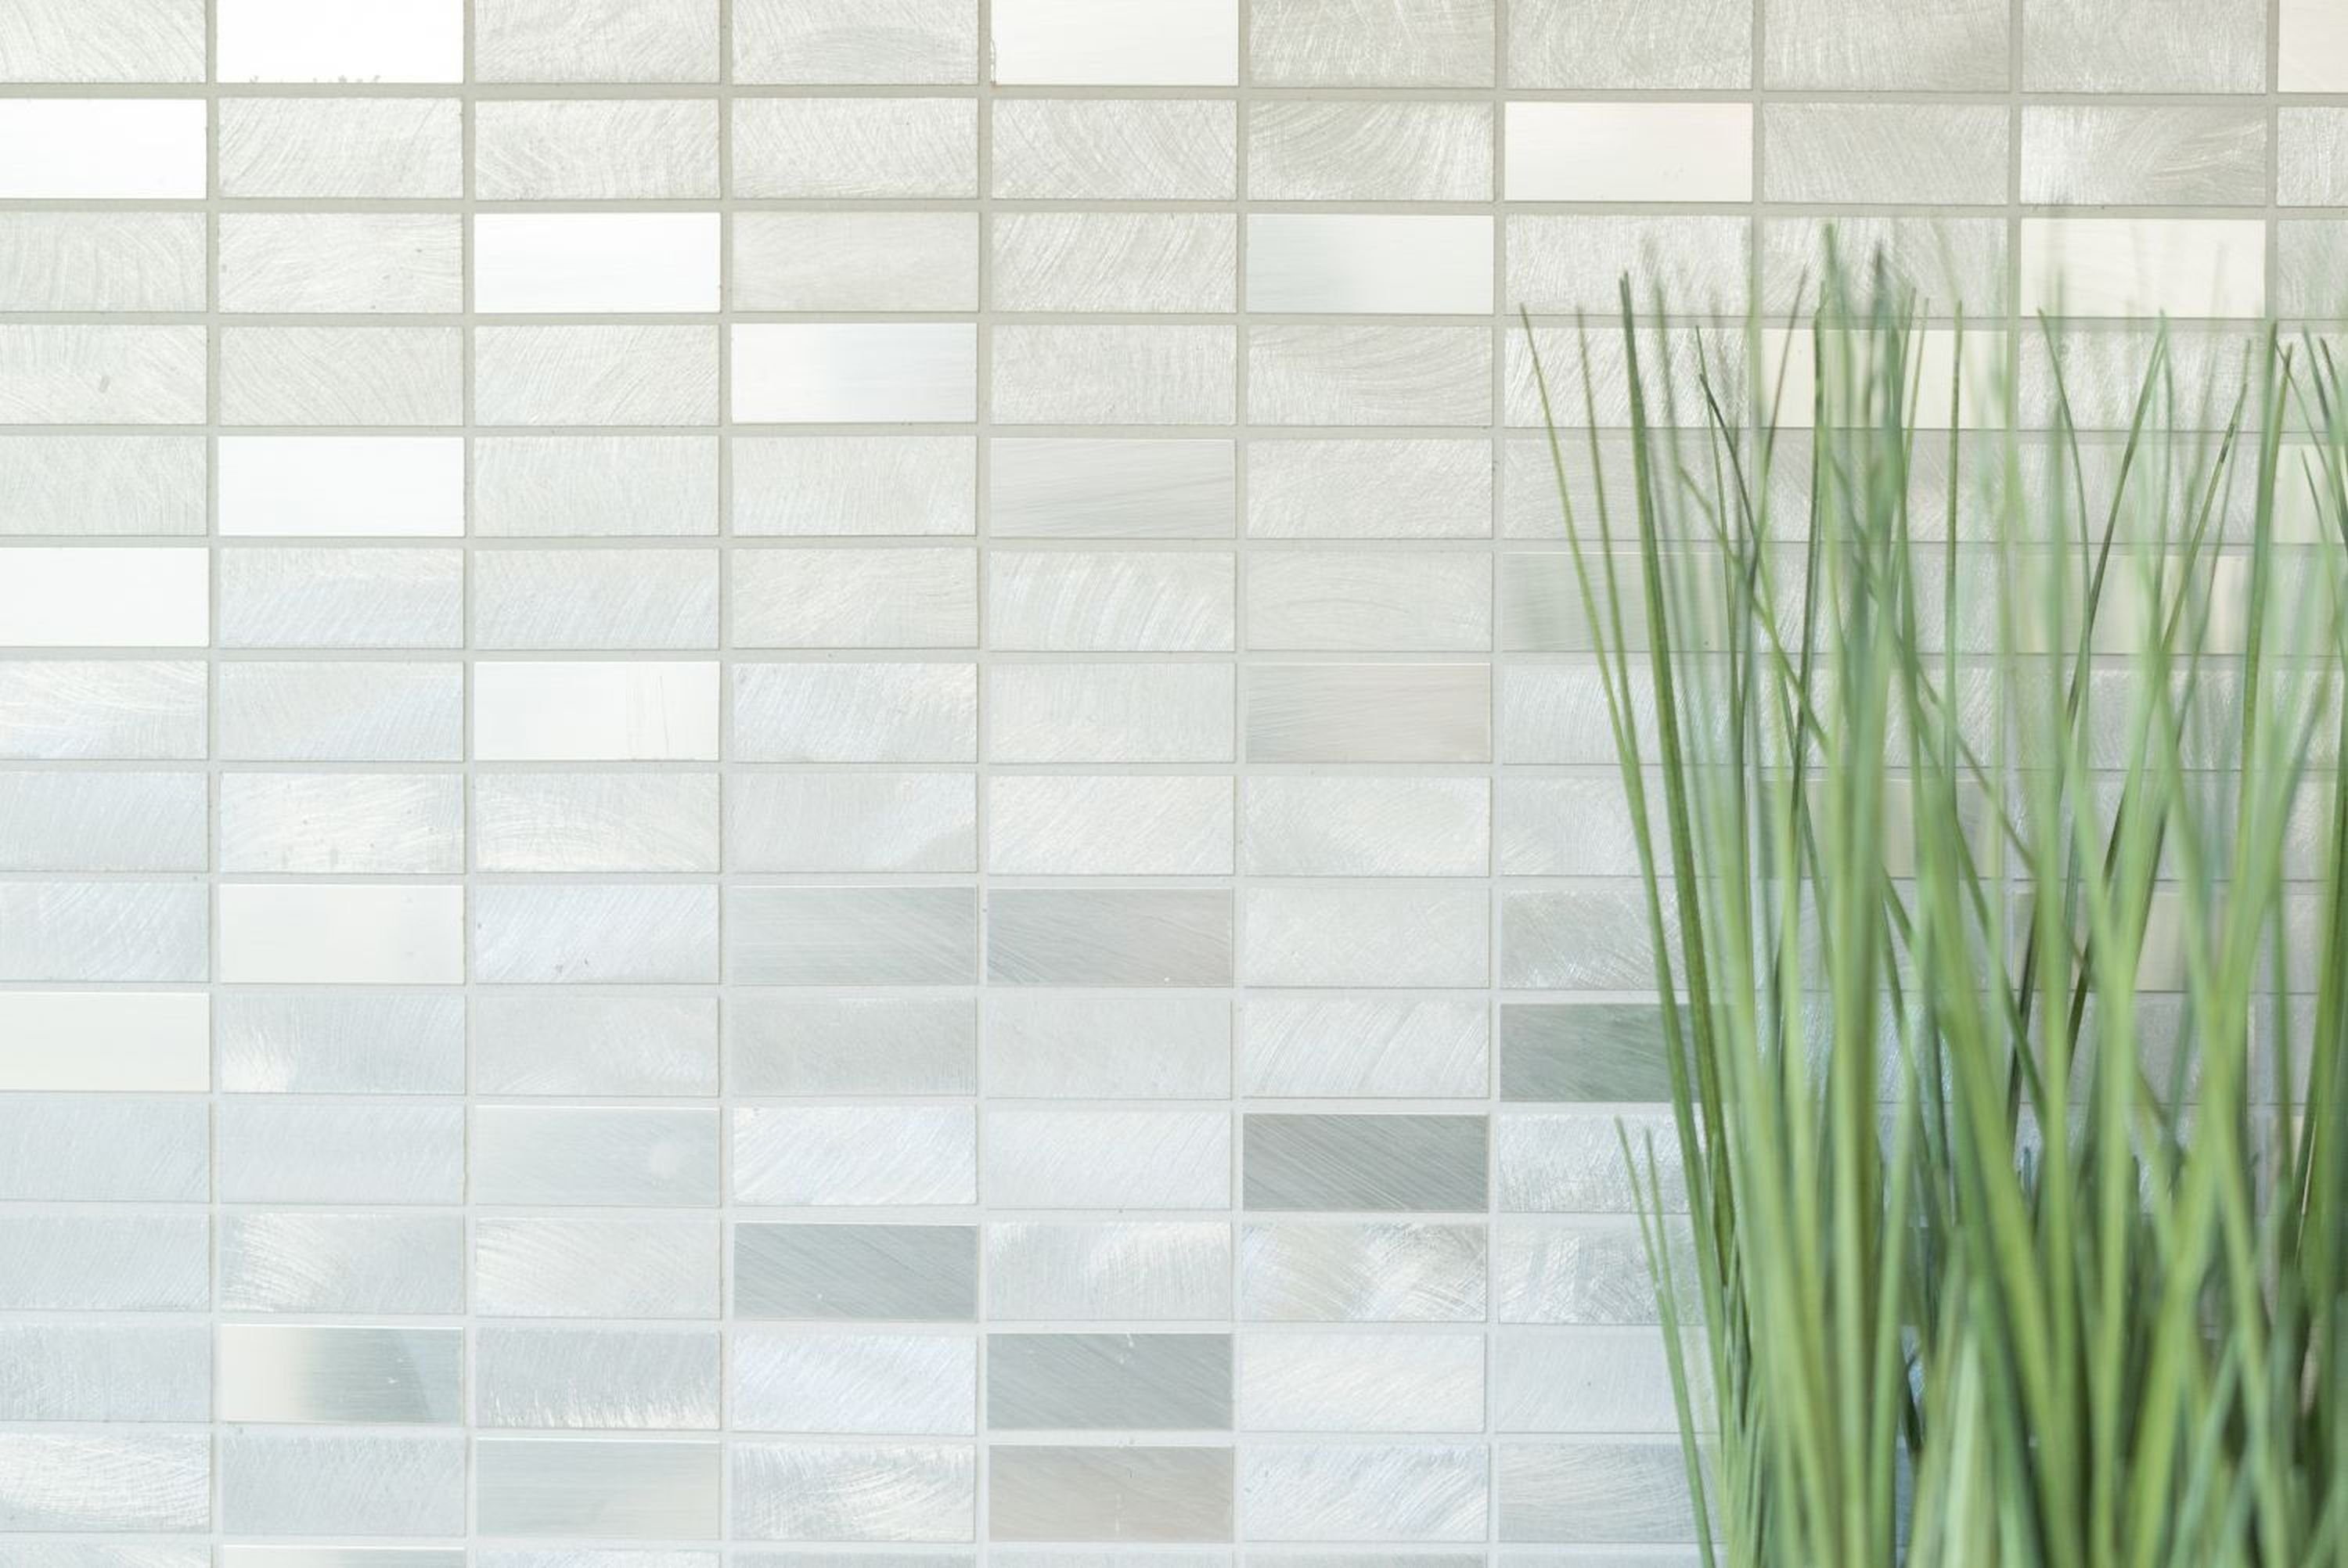 Mosani Mosaikfliesen Mosaik silber Küche Fliese gebürstet poliert Aluminium